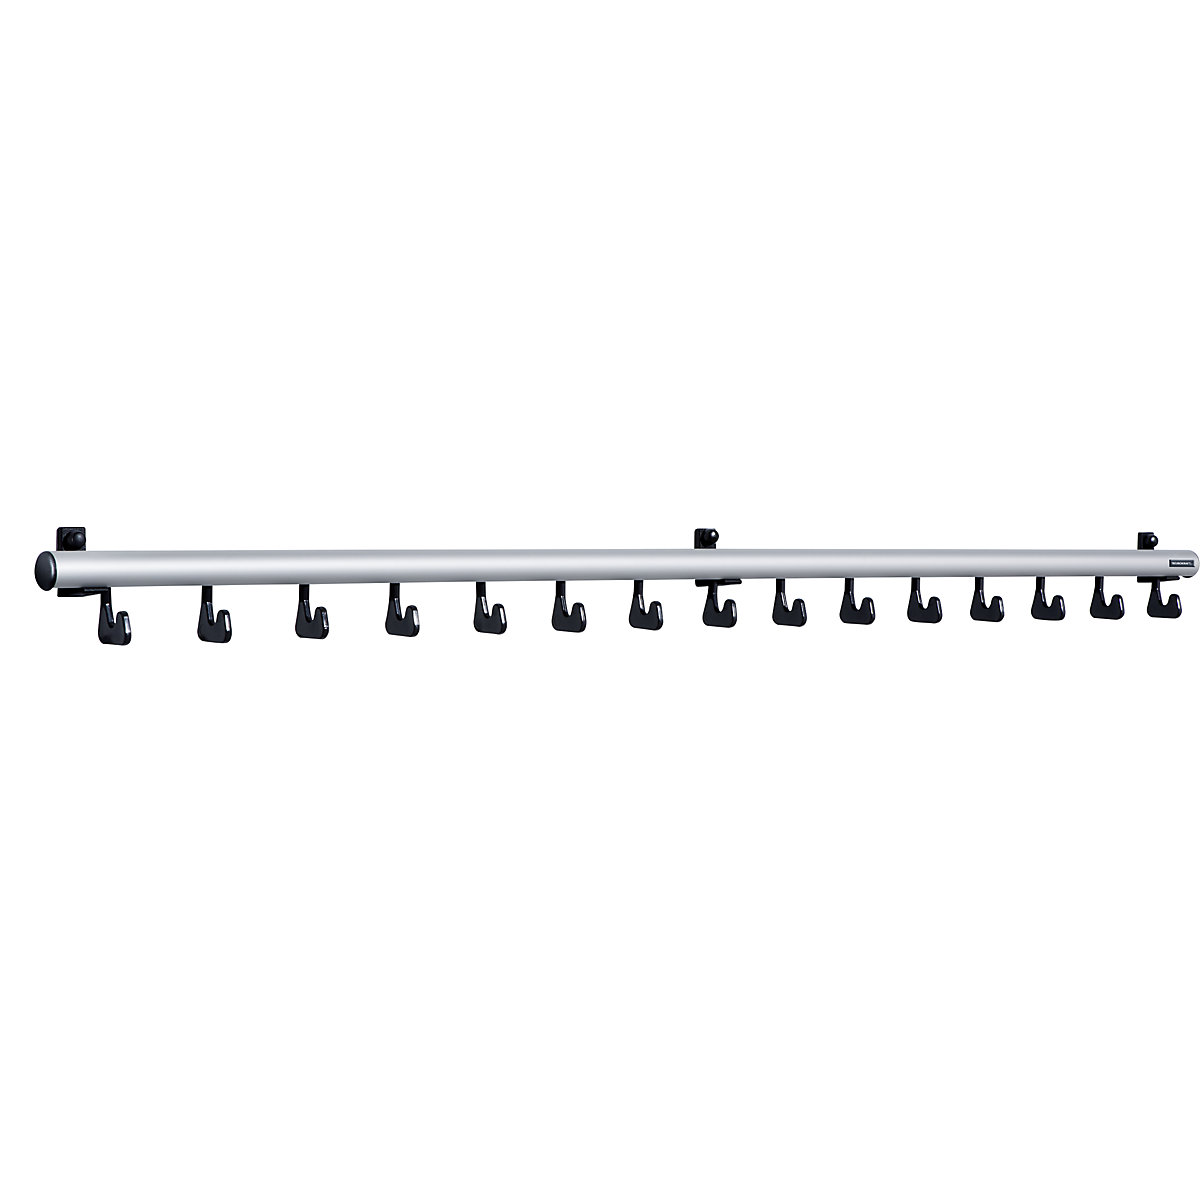 Wall mounted coat rack – eurokraft pro, HxD 80 x 80 mm, 15 hooks, width 1500 mm, pack of 1-2